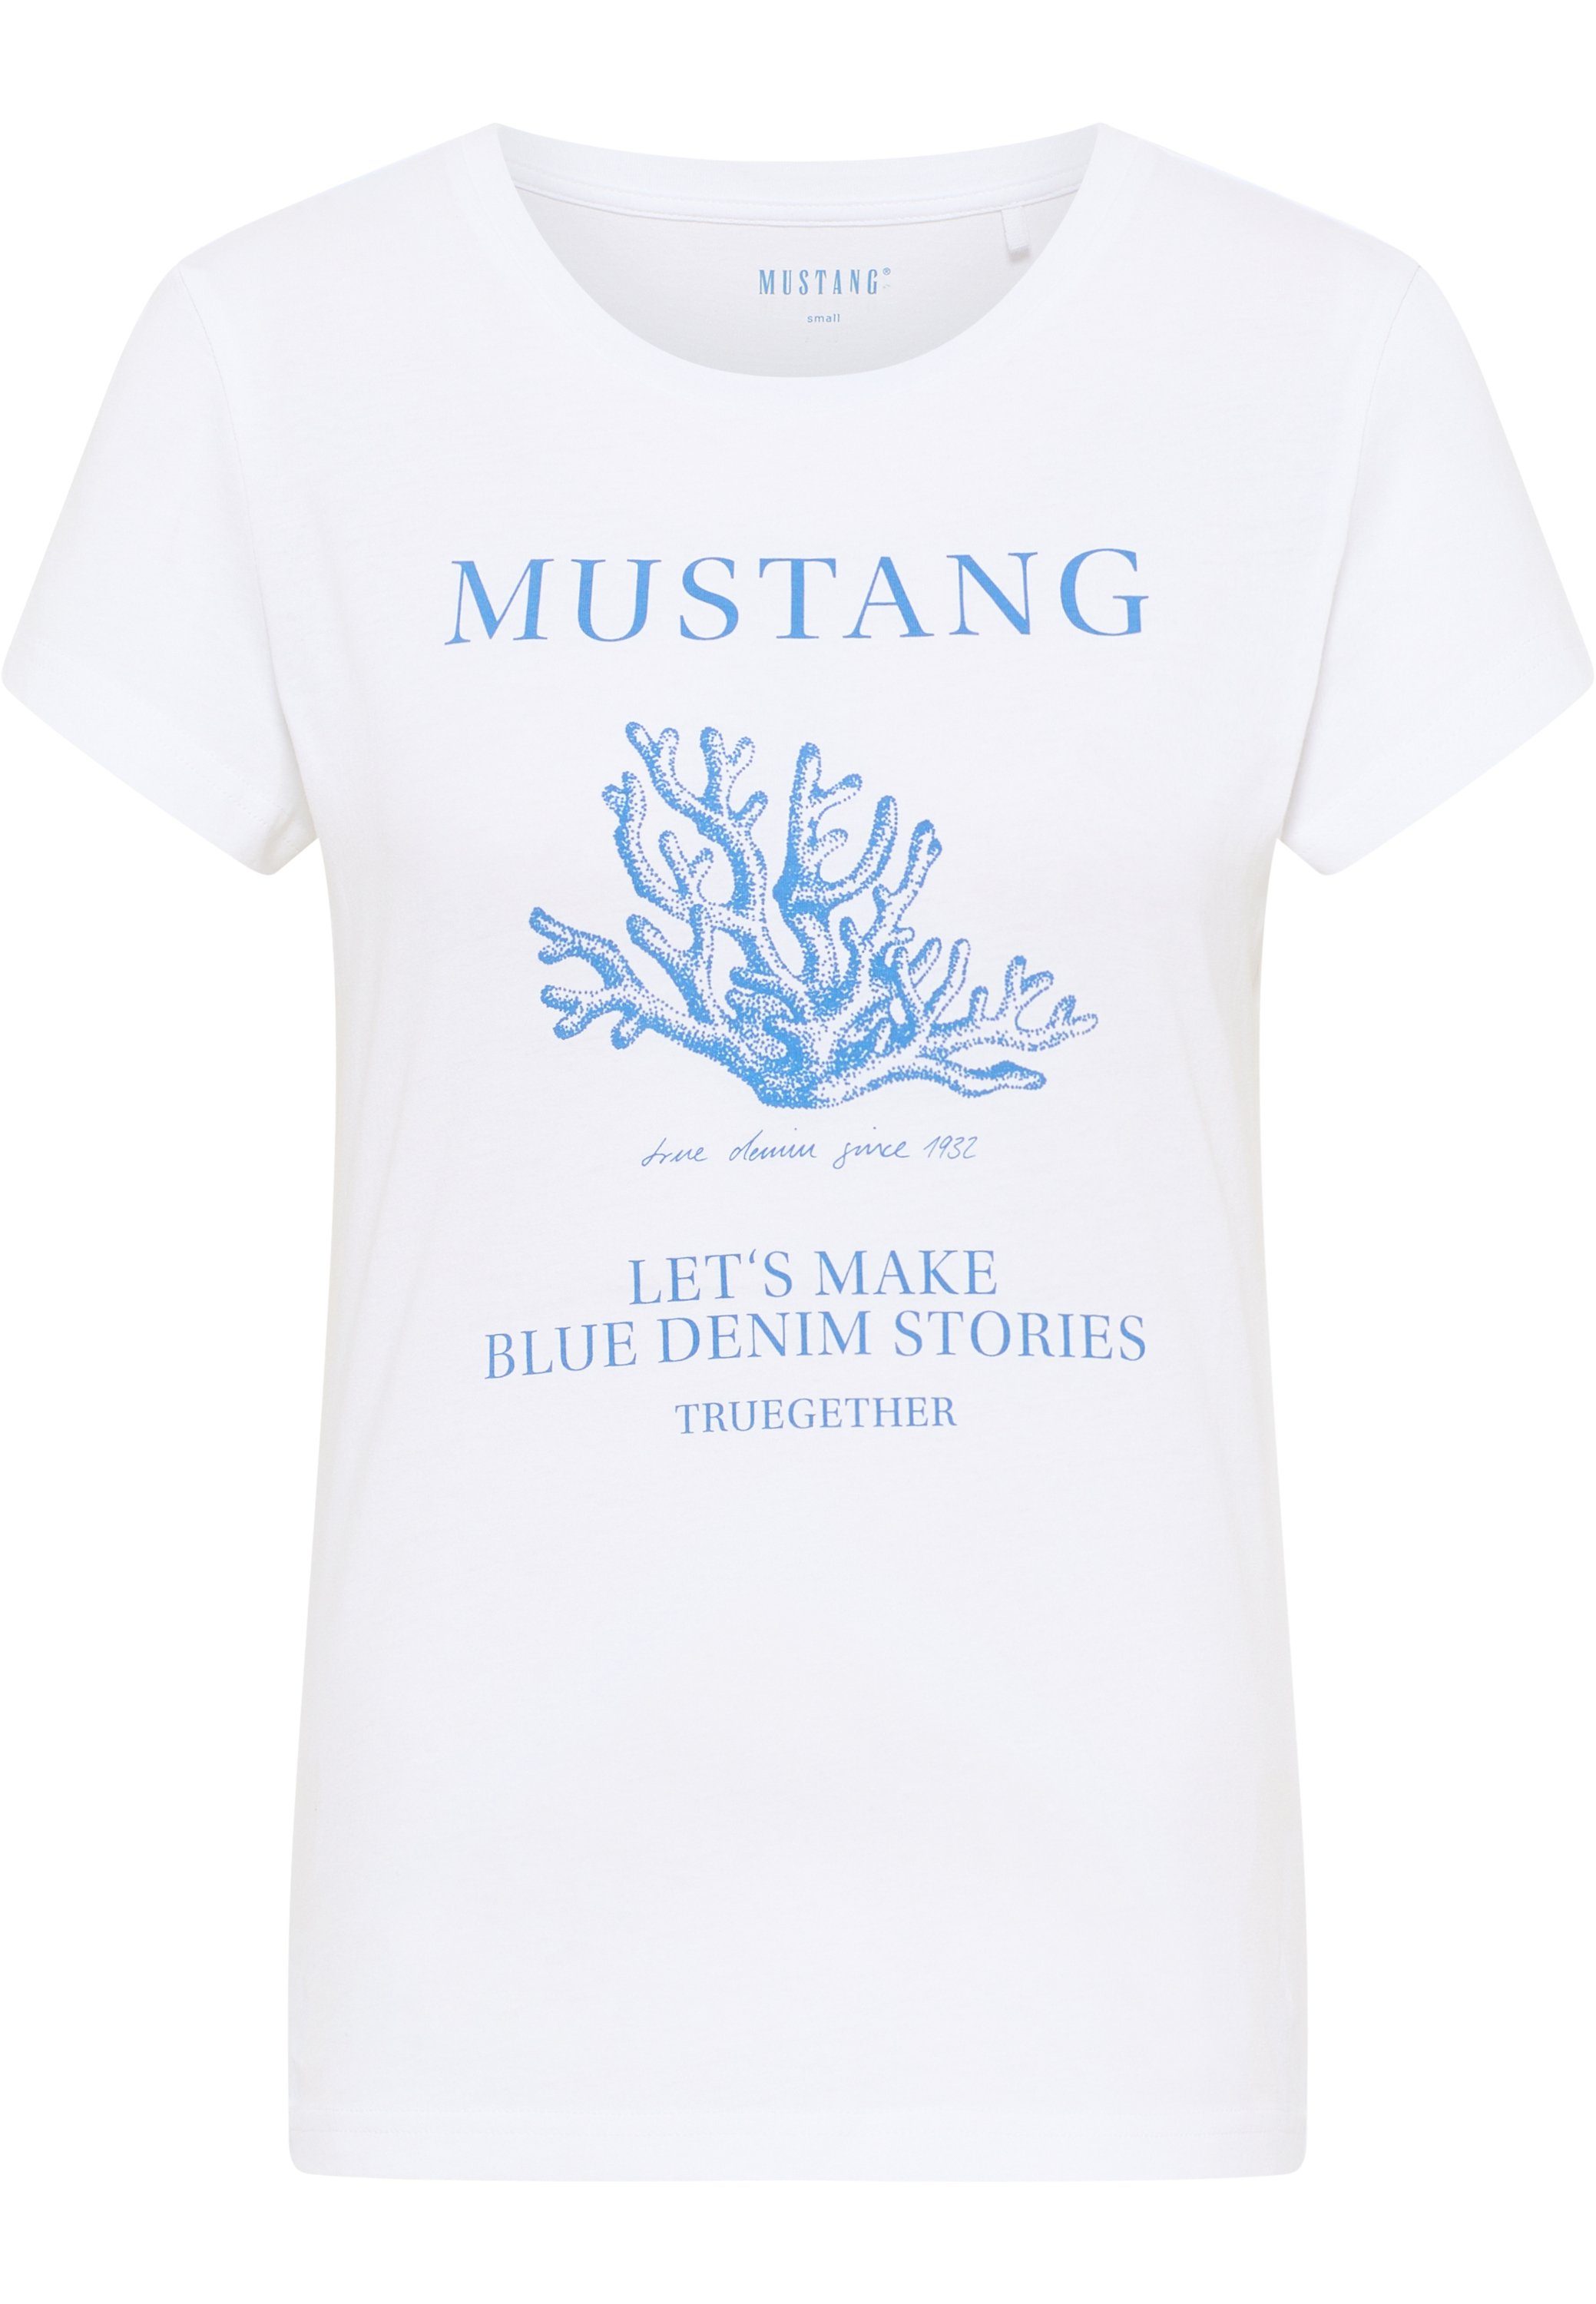 Mode-Online-Shop MUSTANG Kurzarmshirt Mustang T-Shirt Print-Shirt weiß